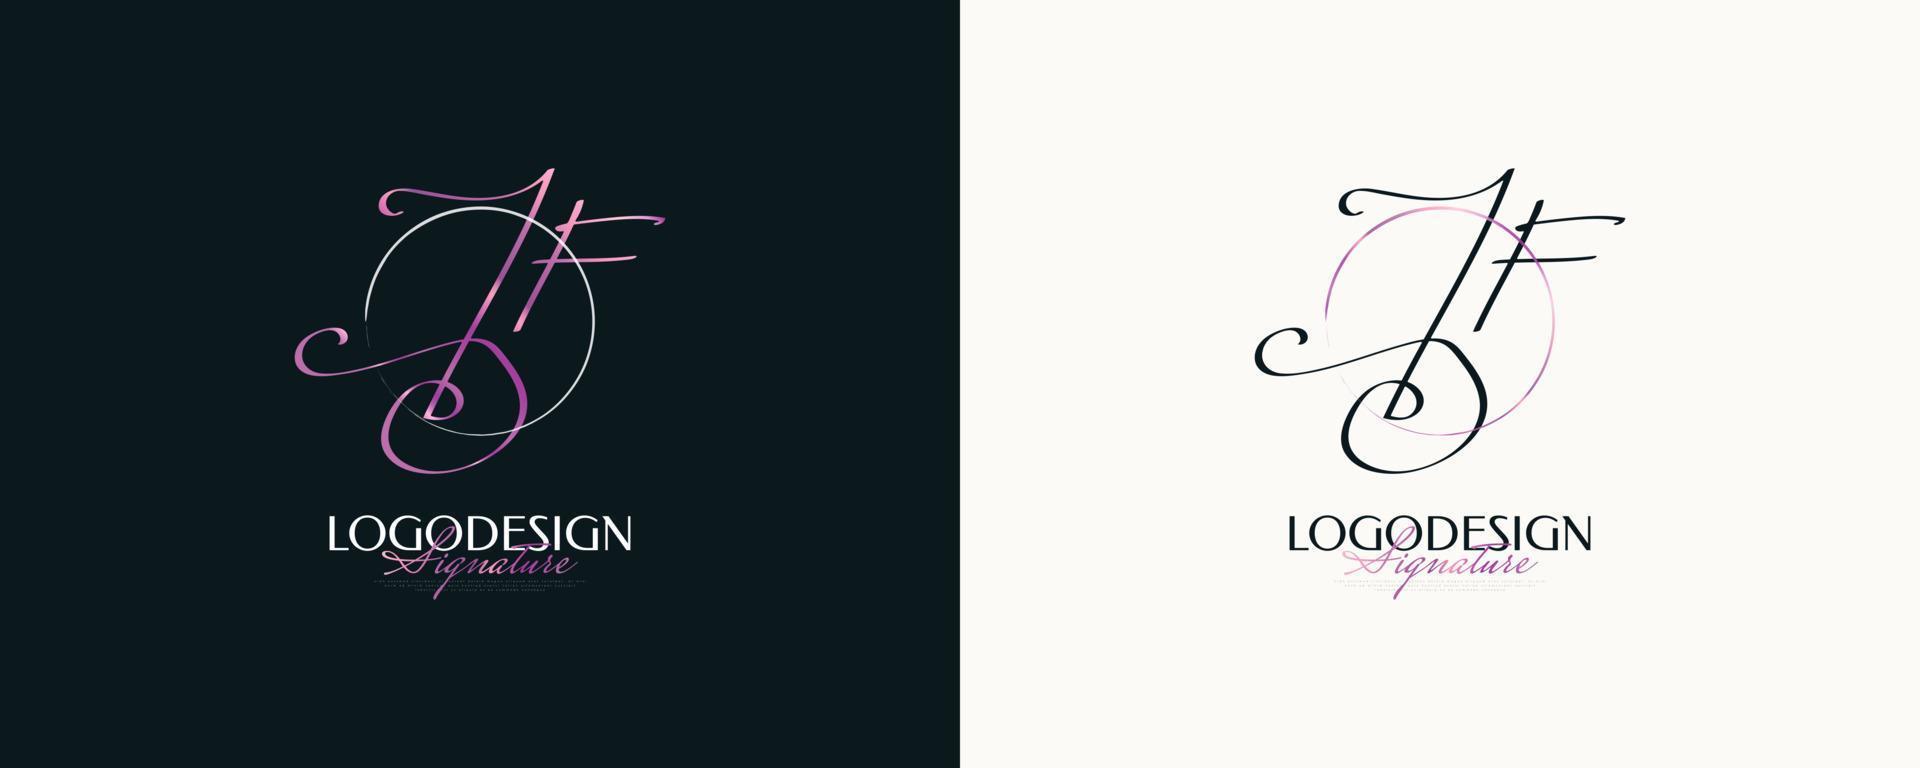 jf första signaturlogotypdesign med elegant och minimalistisk handstil. initial j och f logotypdesign för bröllop, mode, smycken, boutique och affärsmärkesidentitet vektor